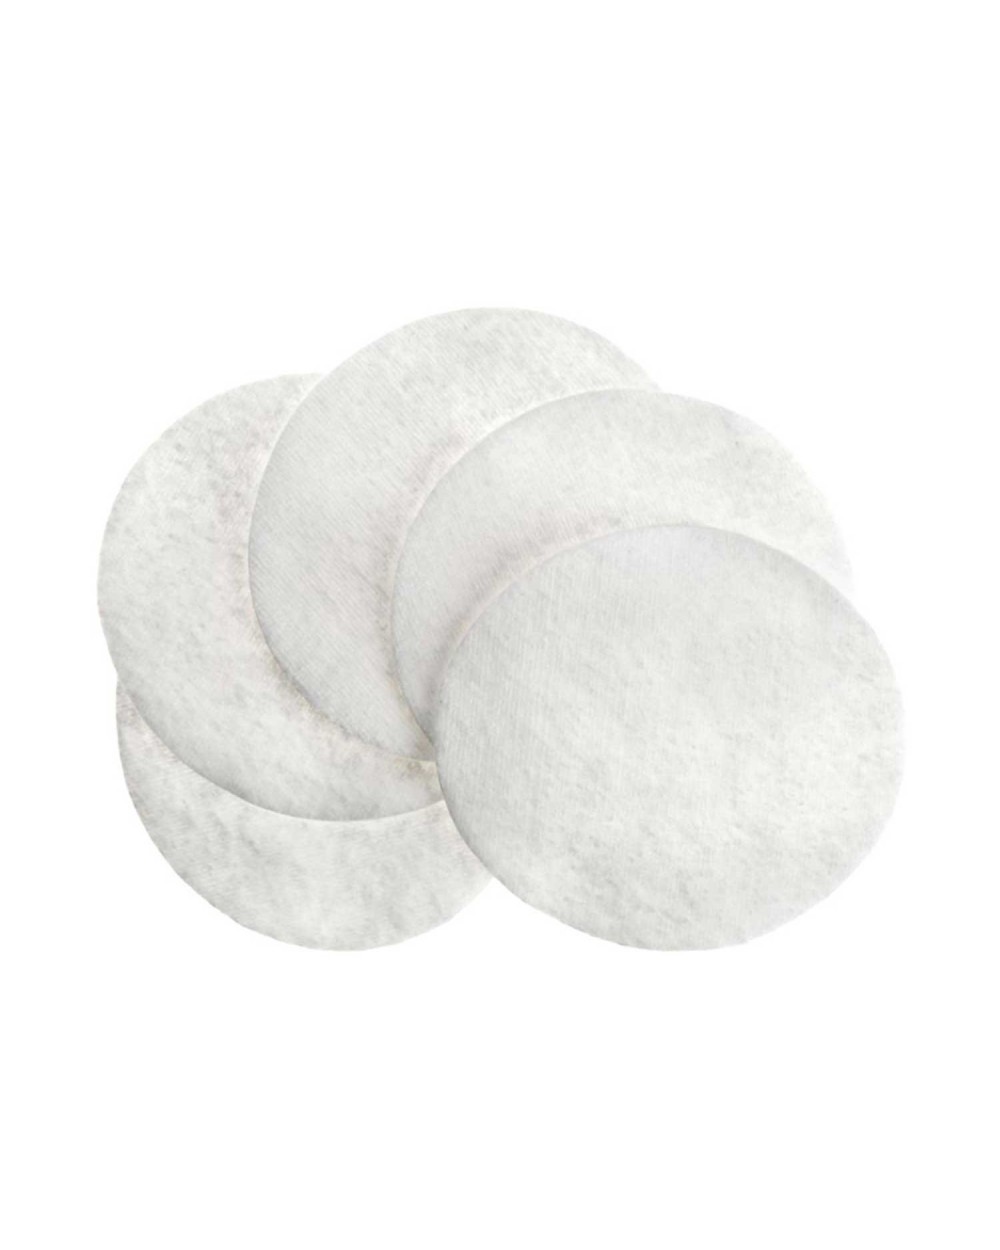 Discos desmaquillantes de algodón Cotoneve x 80 unidades — Zuria